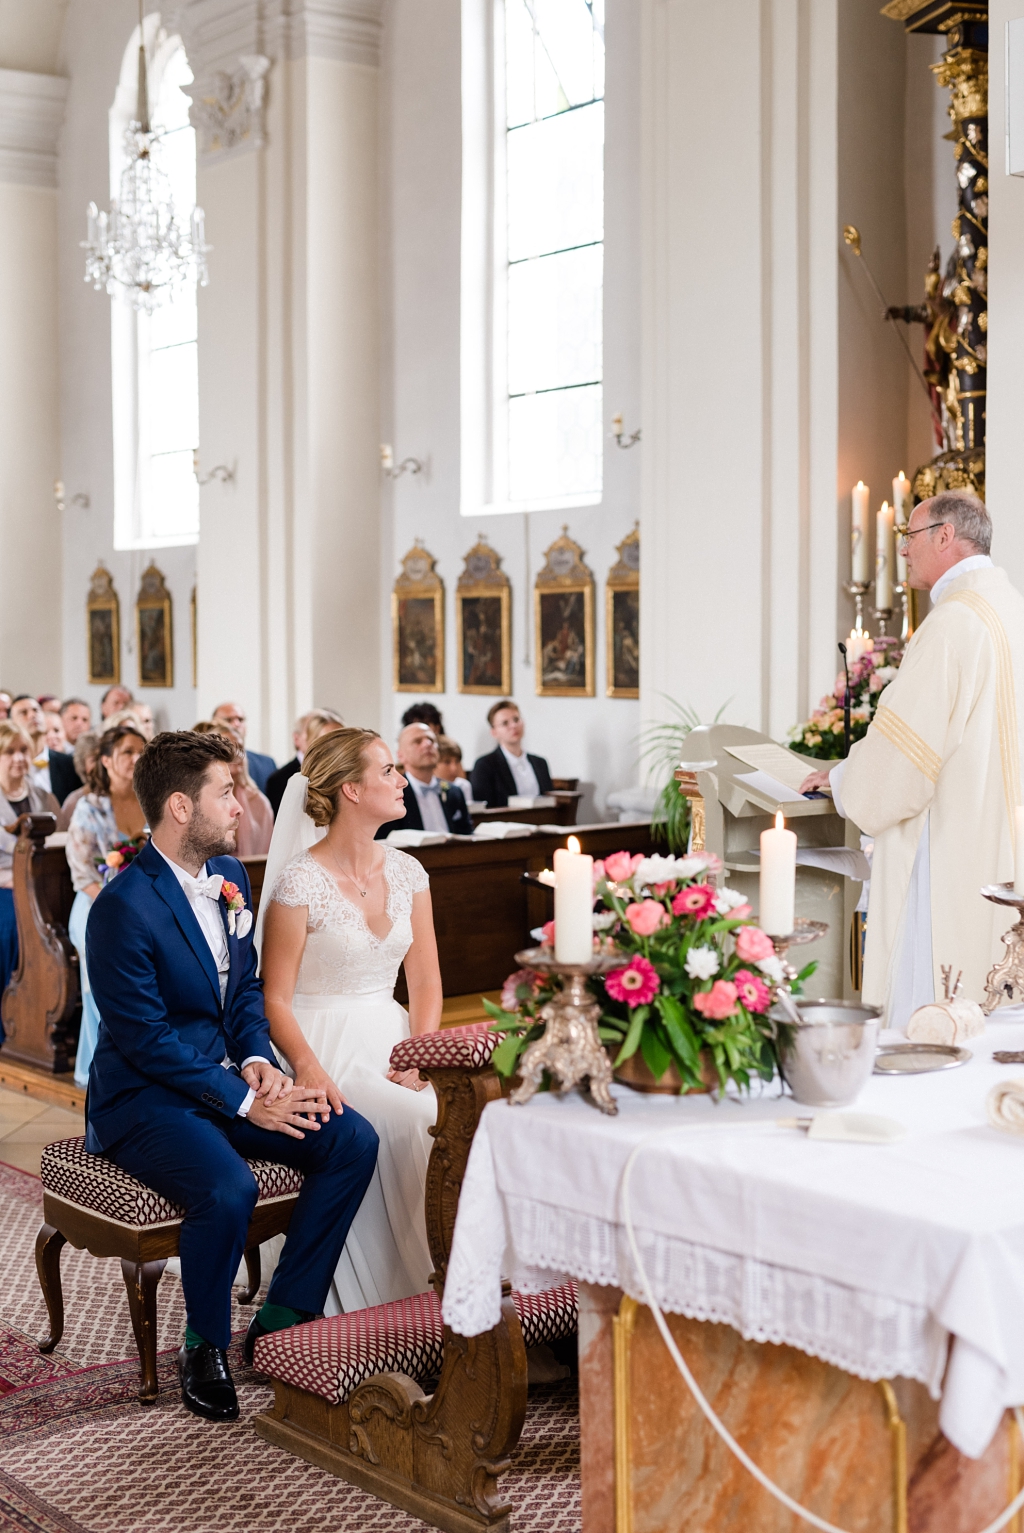 Hochzeitsfotos im Schlosspark Ismaning mit Trauung in der St. Valentin Kirche Unterföhring und Feier im Eventstadl Burgmair in Neuching